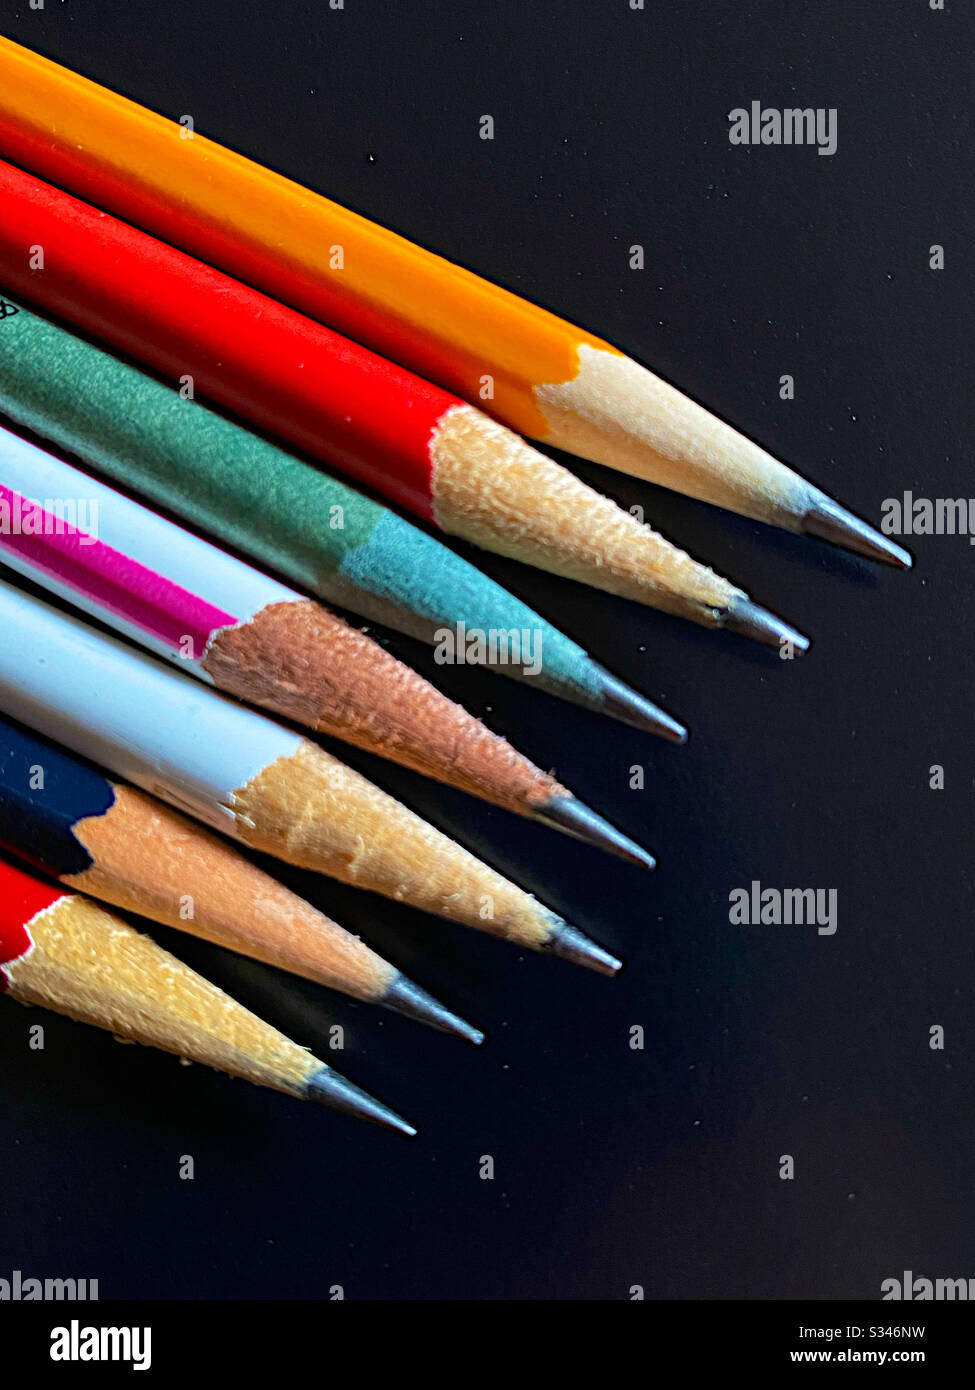 Sept crayons de couleur vive Banque D'Images